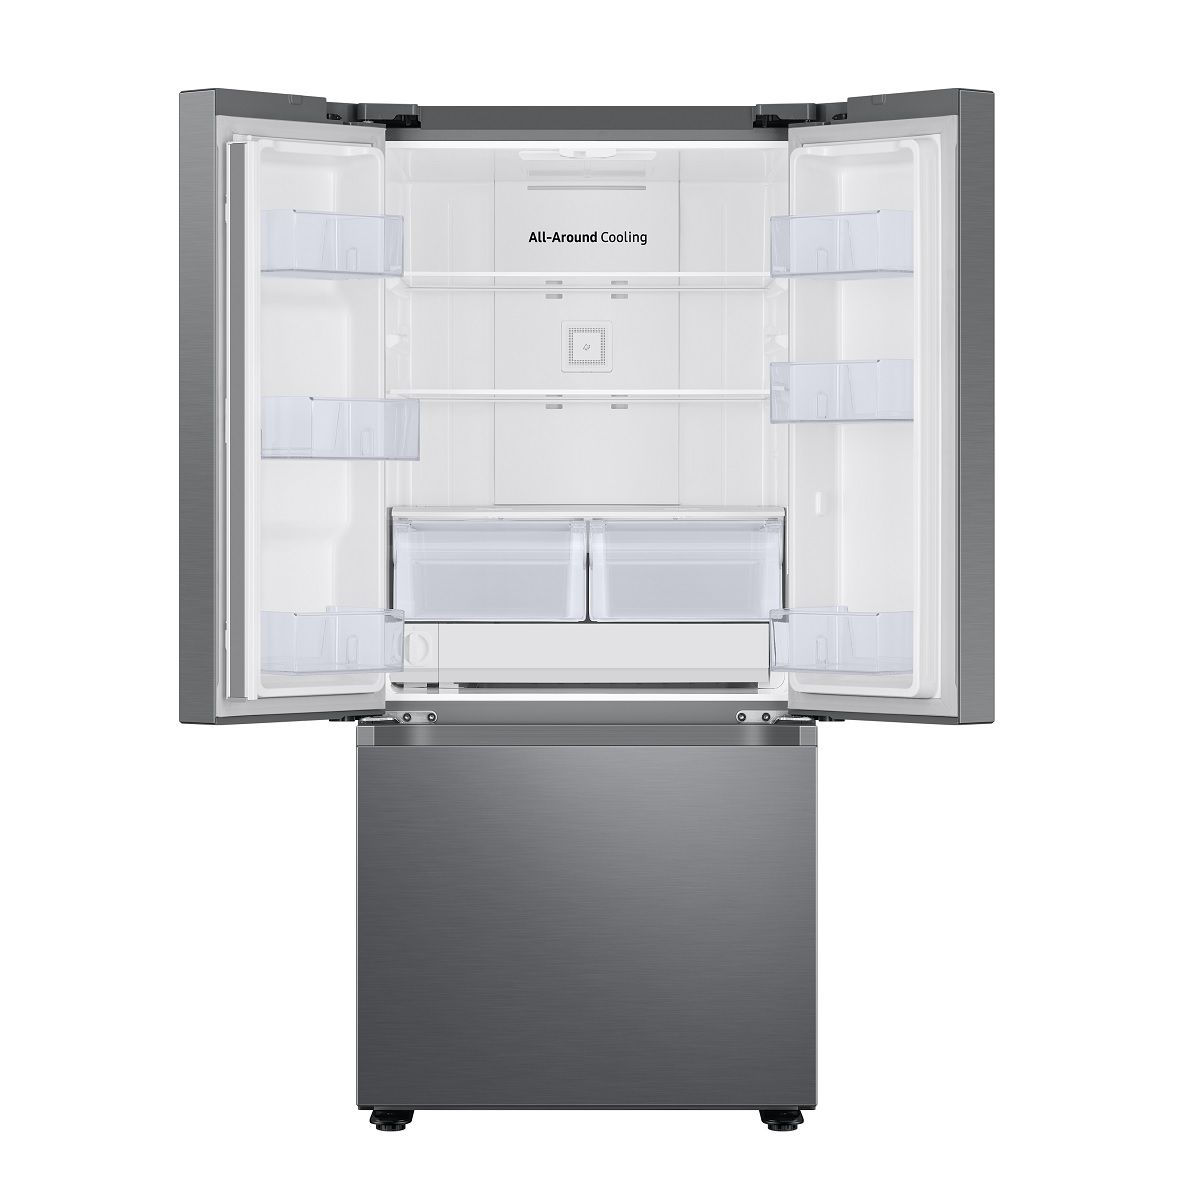 Samsung Refrigerador  22 PCU RF22A4220S9